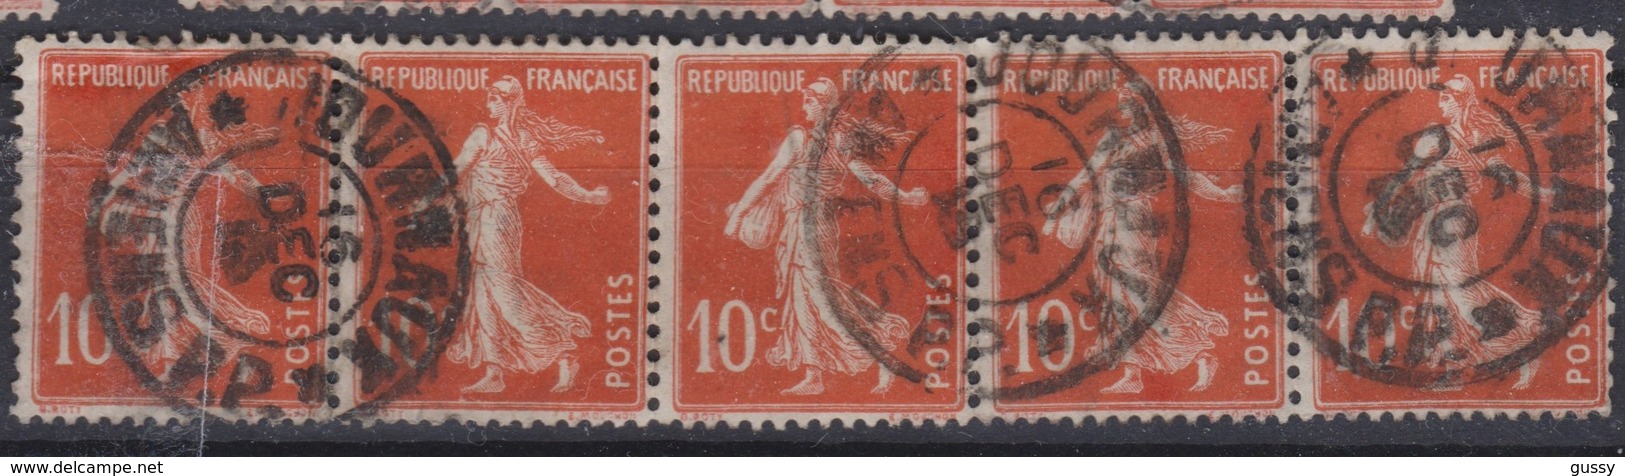 FRANCE Journaux 1906:  Le 10c Rouge Bande De 5  (Y&T 138) Avec Oblitération  Pas Très Courante   'Journaux-Amiens'   TB - Periódicos